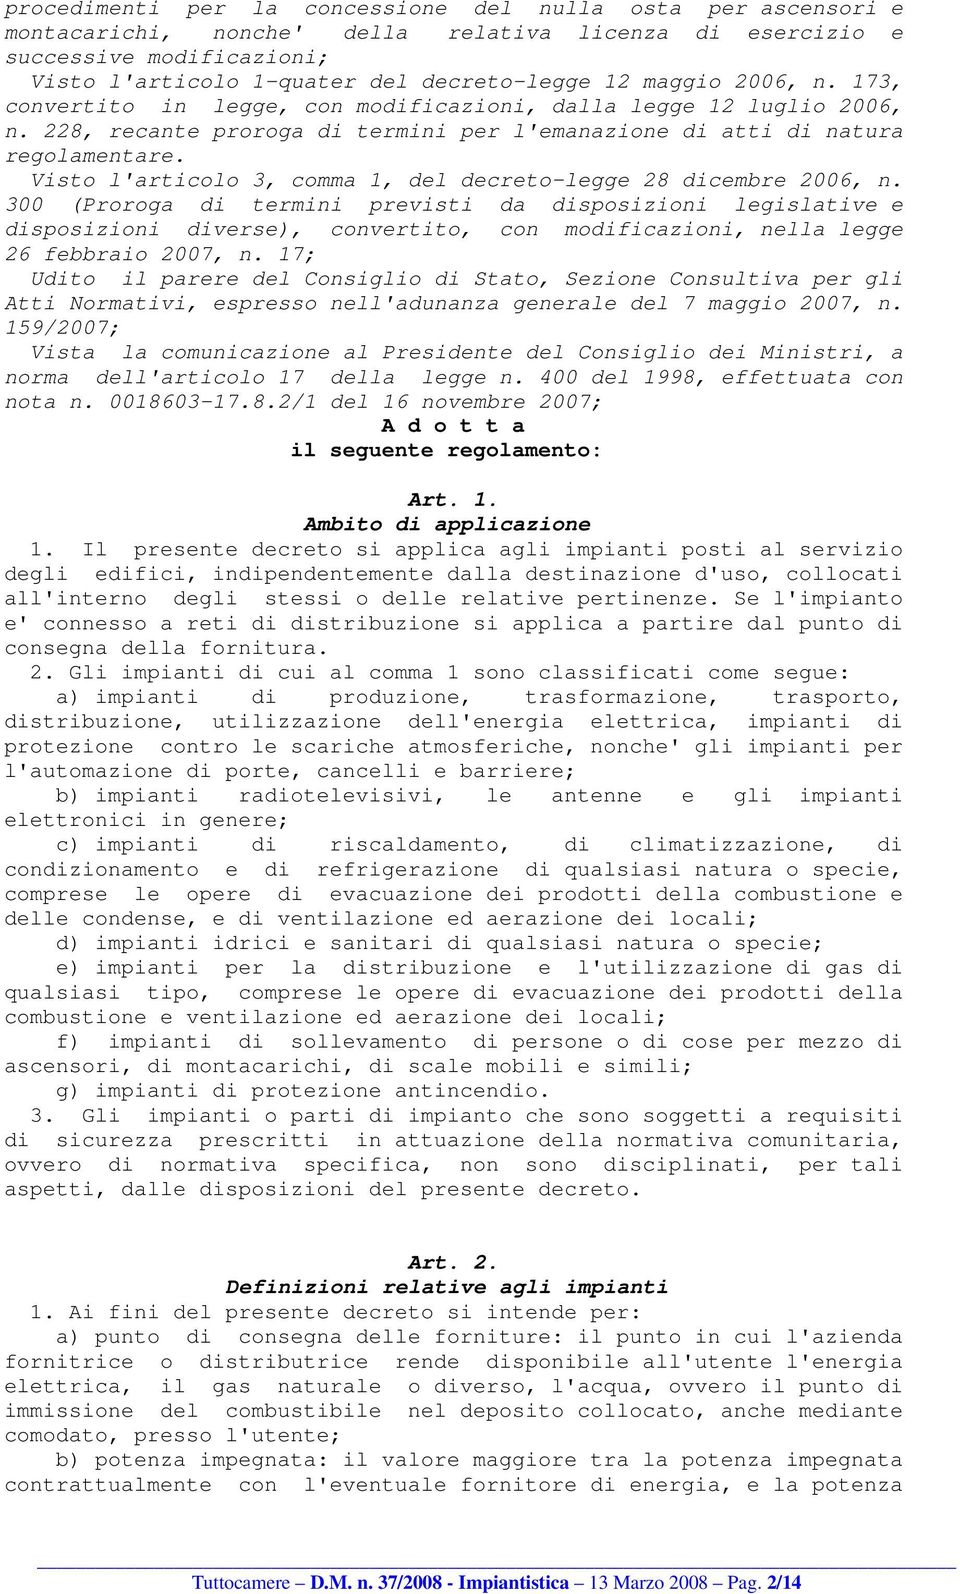 Visto l'articolo 3, comma 1, del decreto-legge 28 dicembre 2006, n.